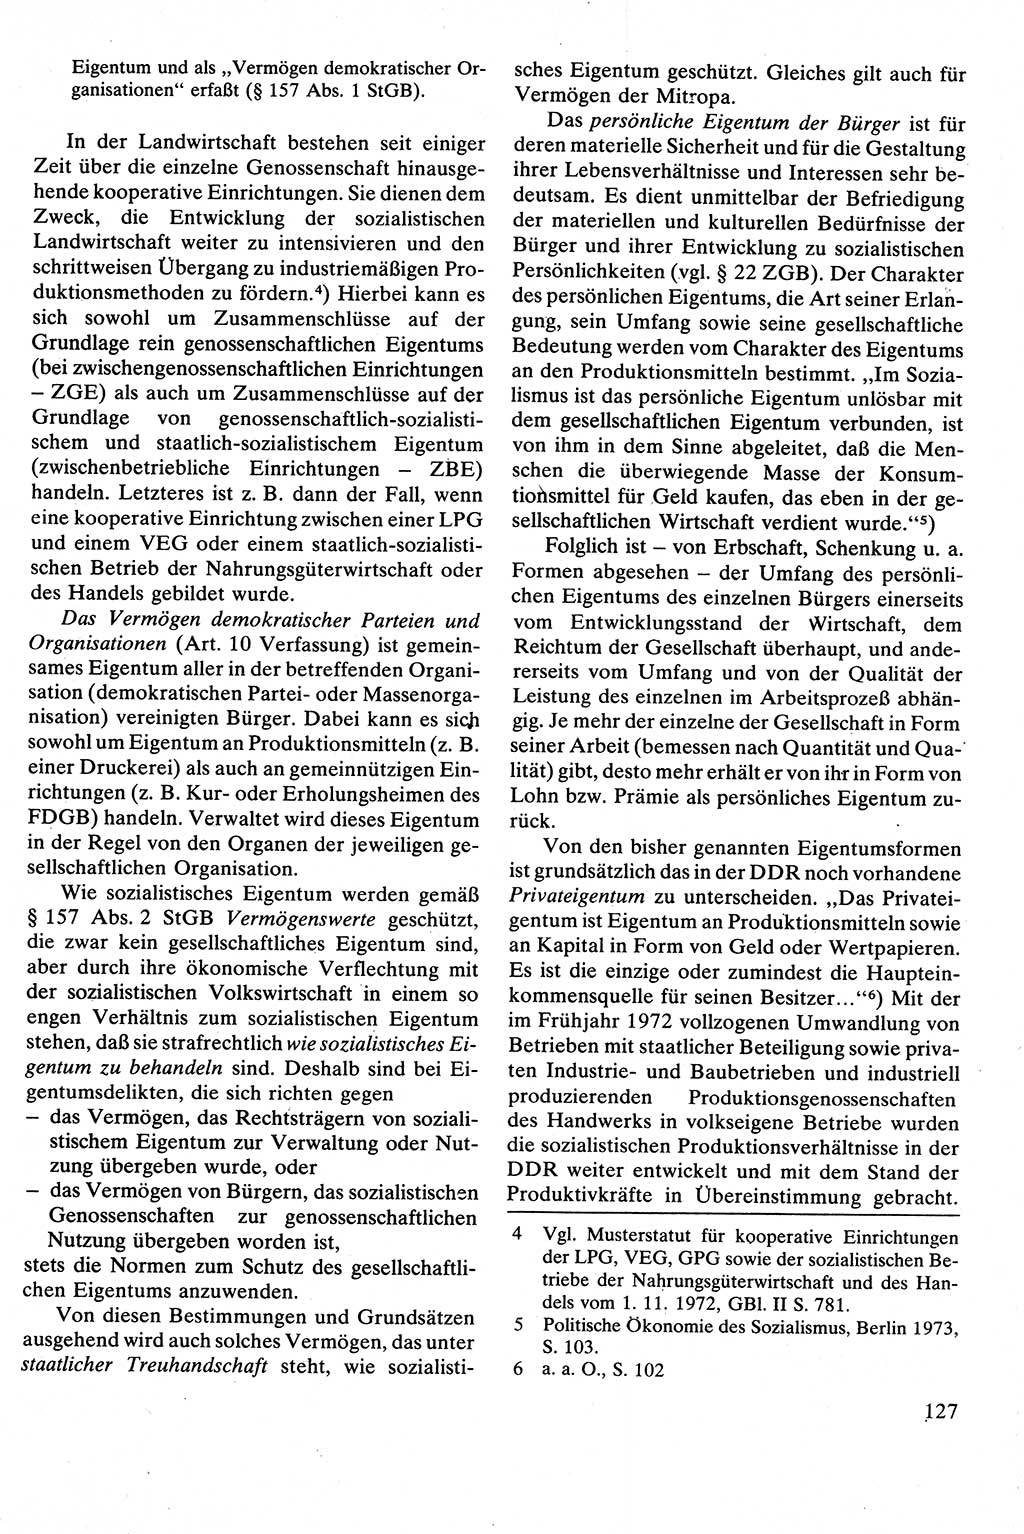 Strafrecht [Deutsche Demokratische Republik (DDR)], Besonderer Teil, Lehrbuch 1981, Seite 127 (Strafr. DDR BT Lb. 1981, S. 127)